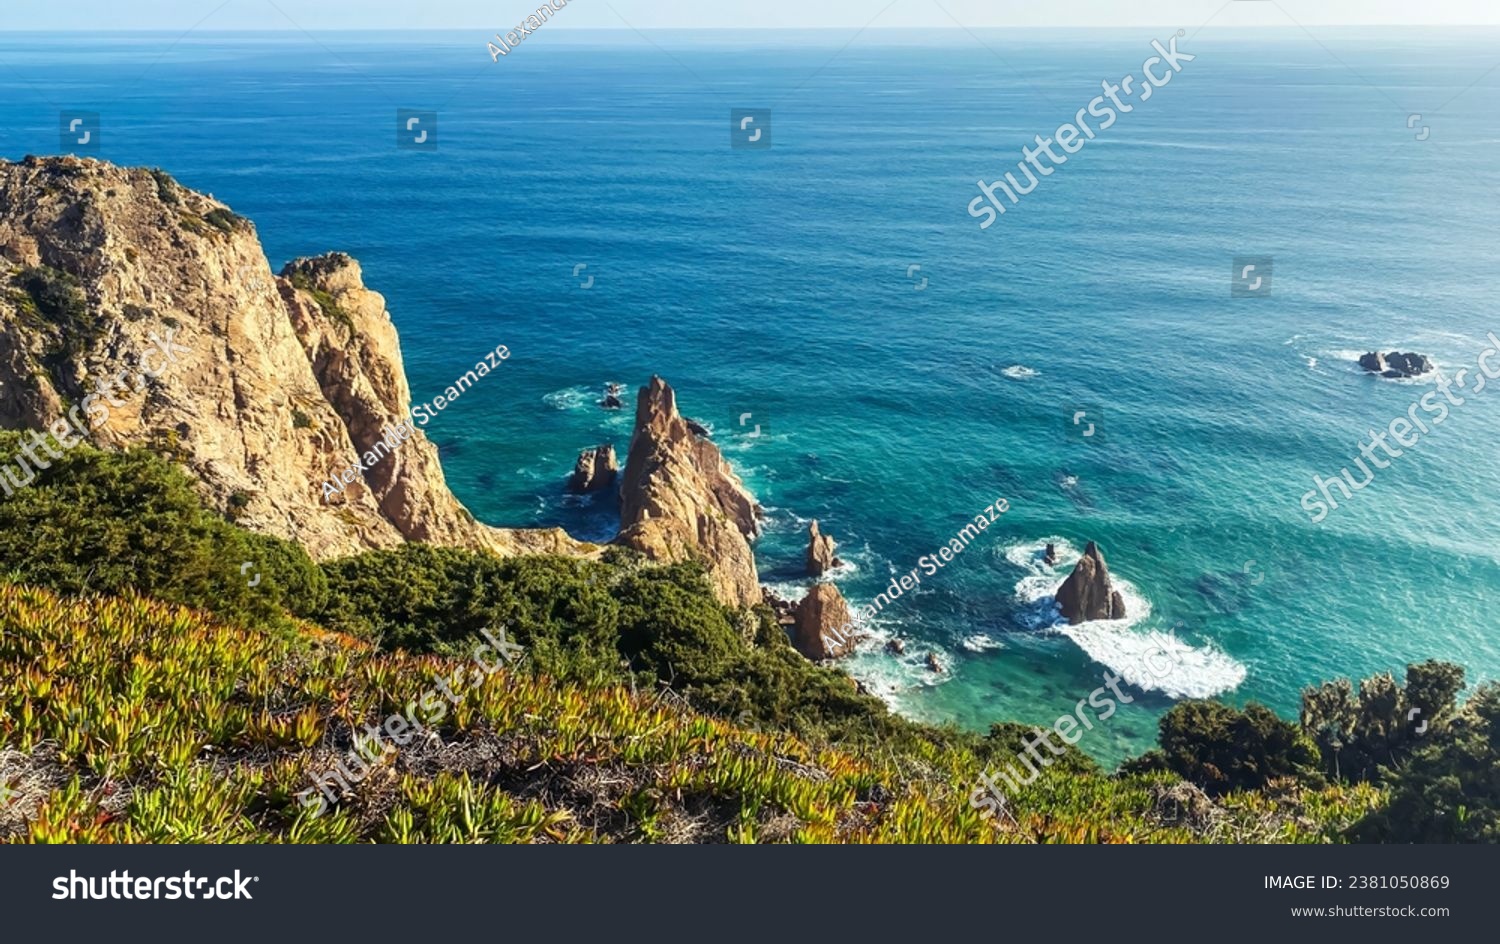 Coastline of Portugal, Cabo da Roca. Cape Roca in Sintra #2381050869